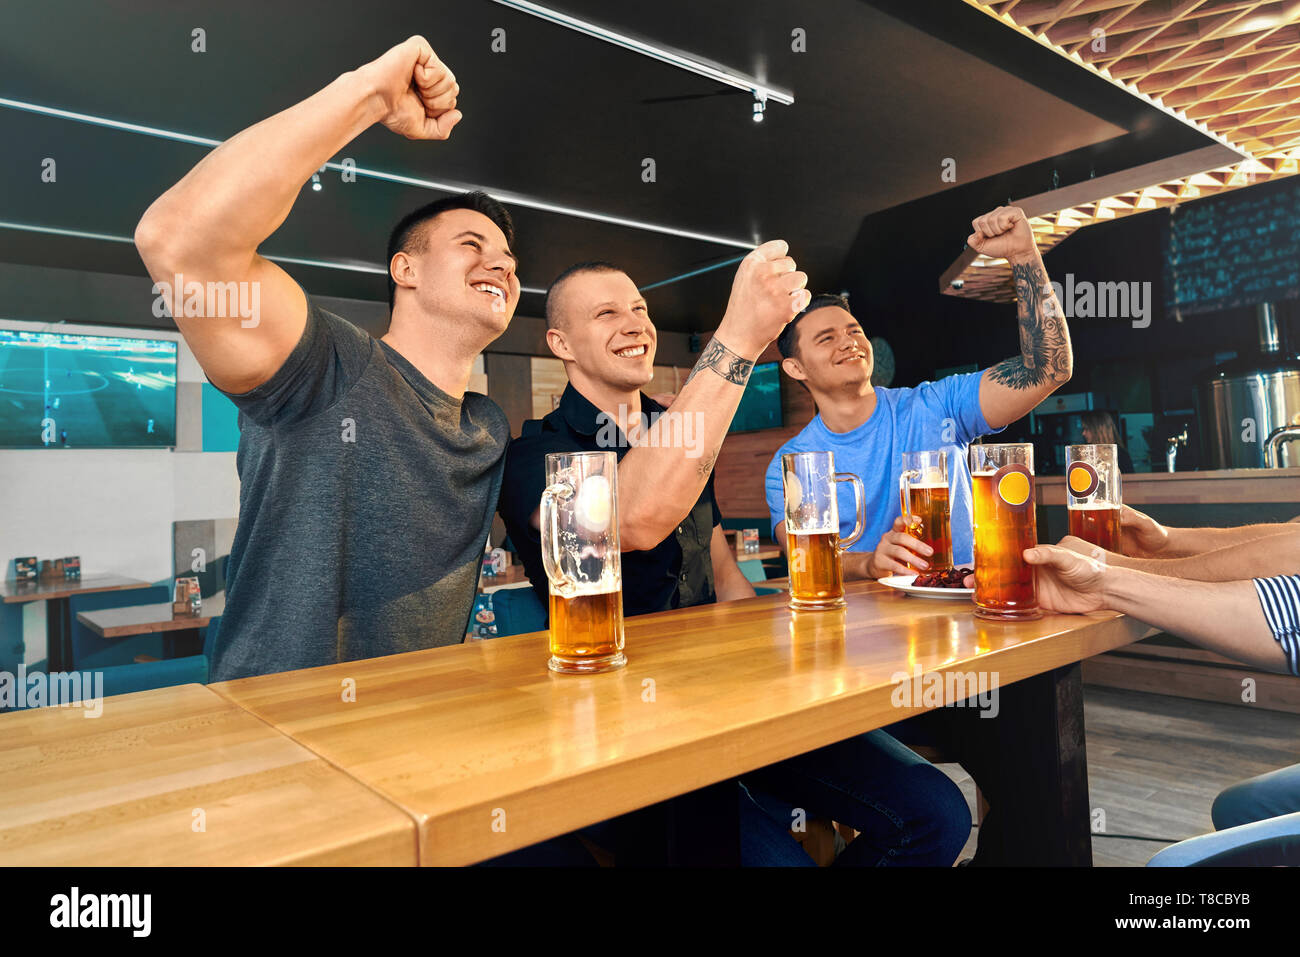 Gerne Freunden im Pub sitzen und beobachten Fußballspiel zusammen. Männliche Freunde jubeln, Lachen und trinken lecker Bier im Cafe am Wochenende. Konzept des Glücks und der Fans. Stockfoto